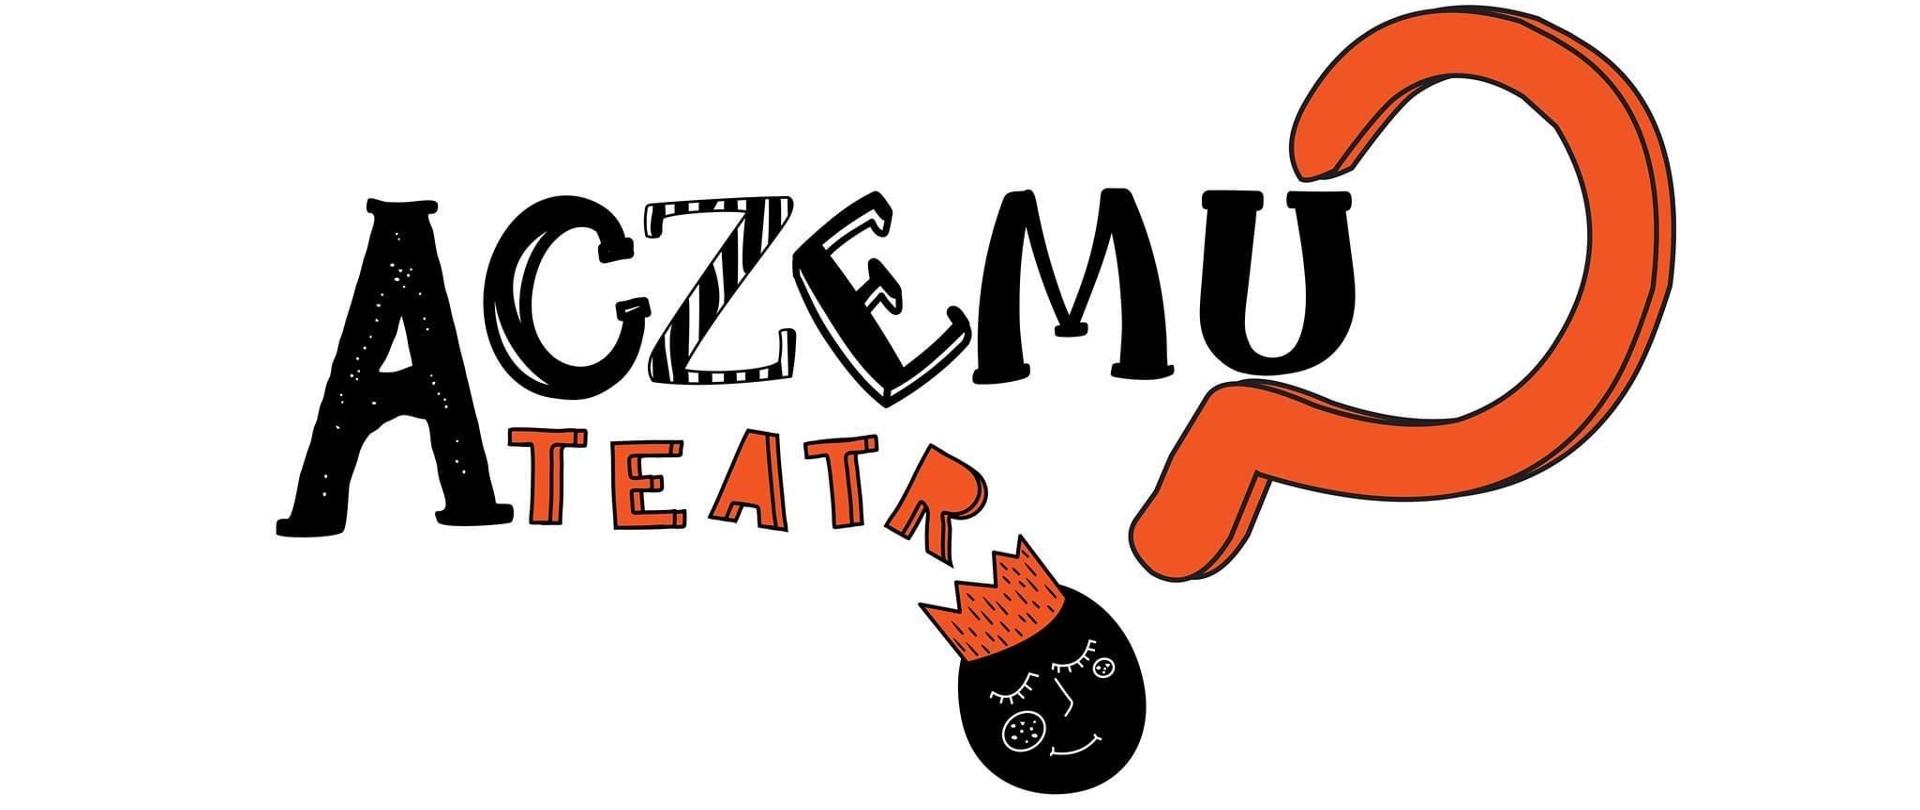 ACZEMU_Teatr